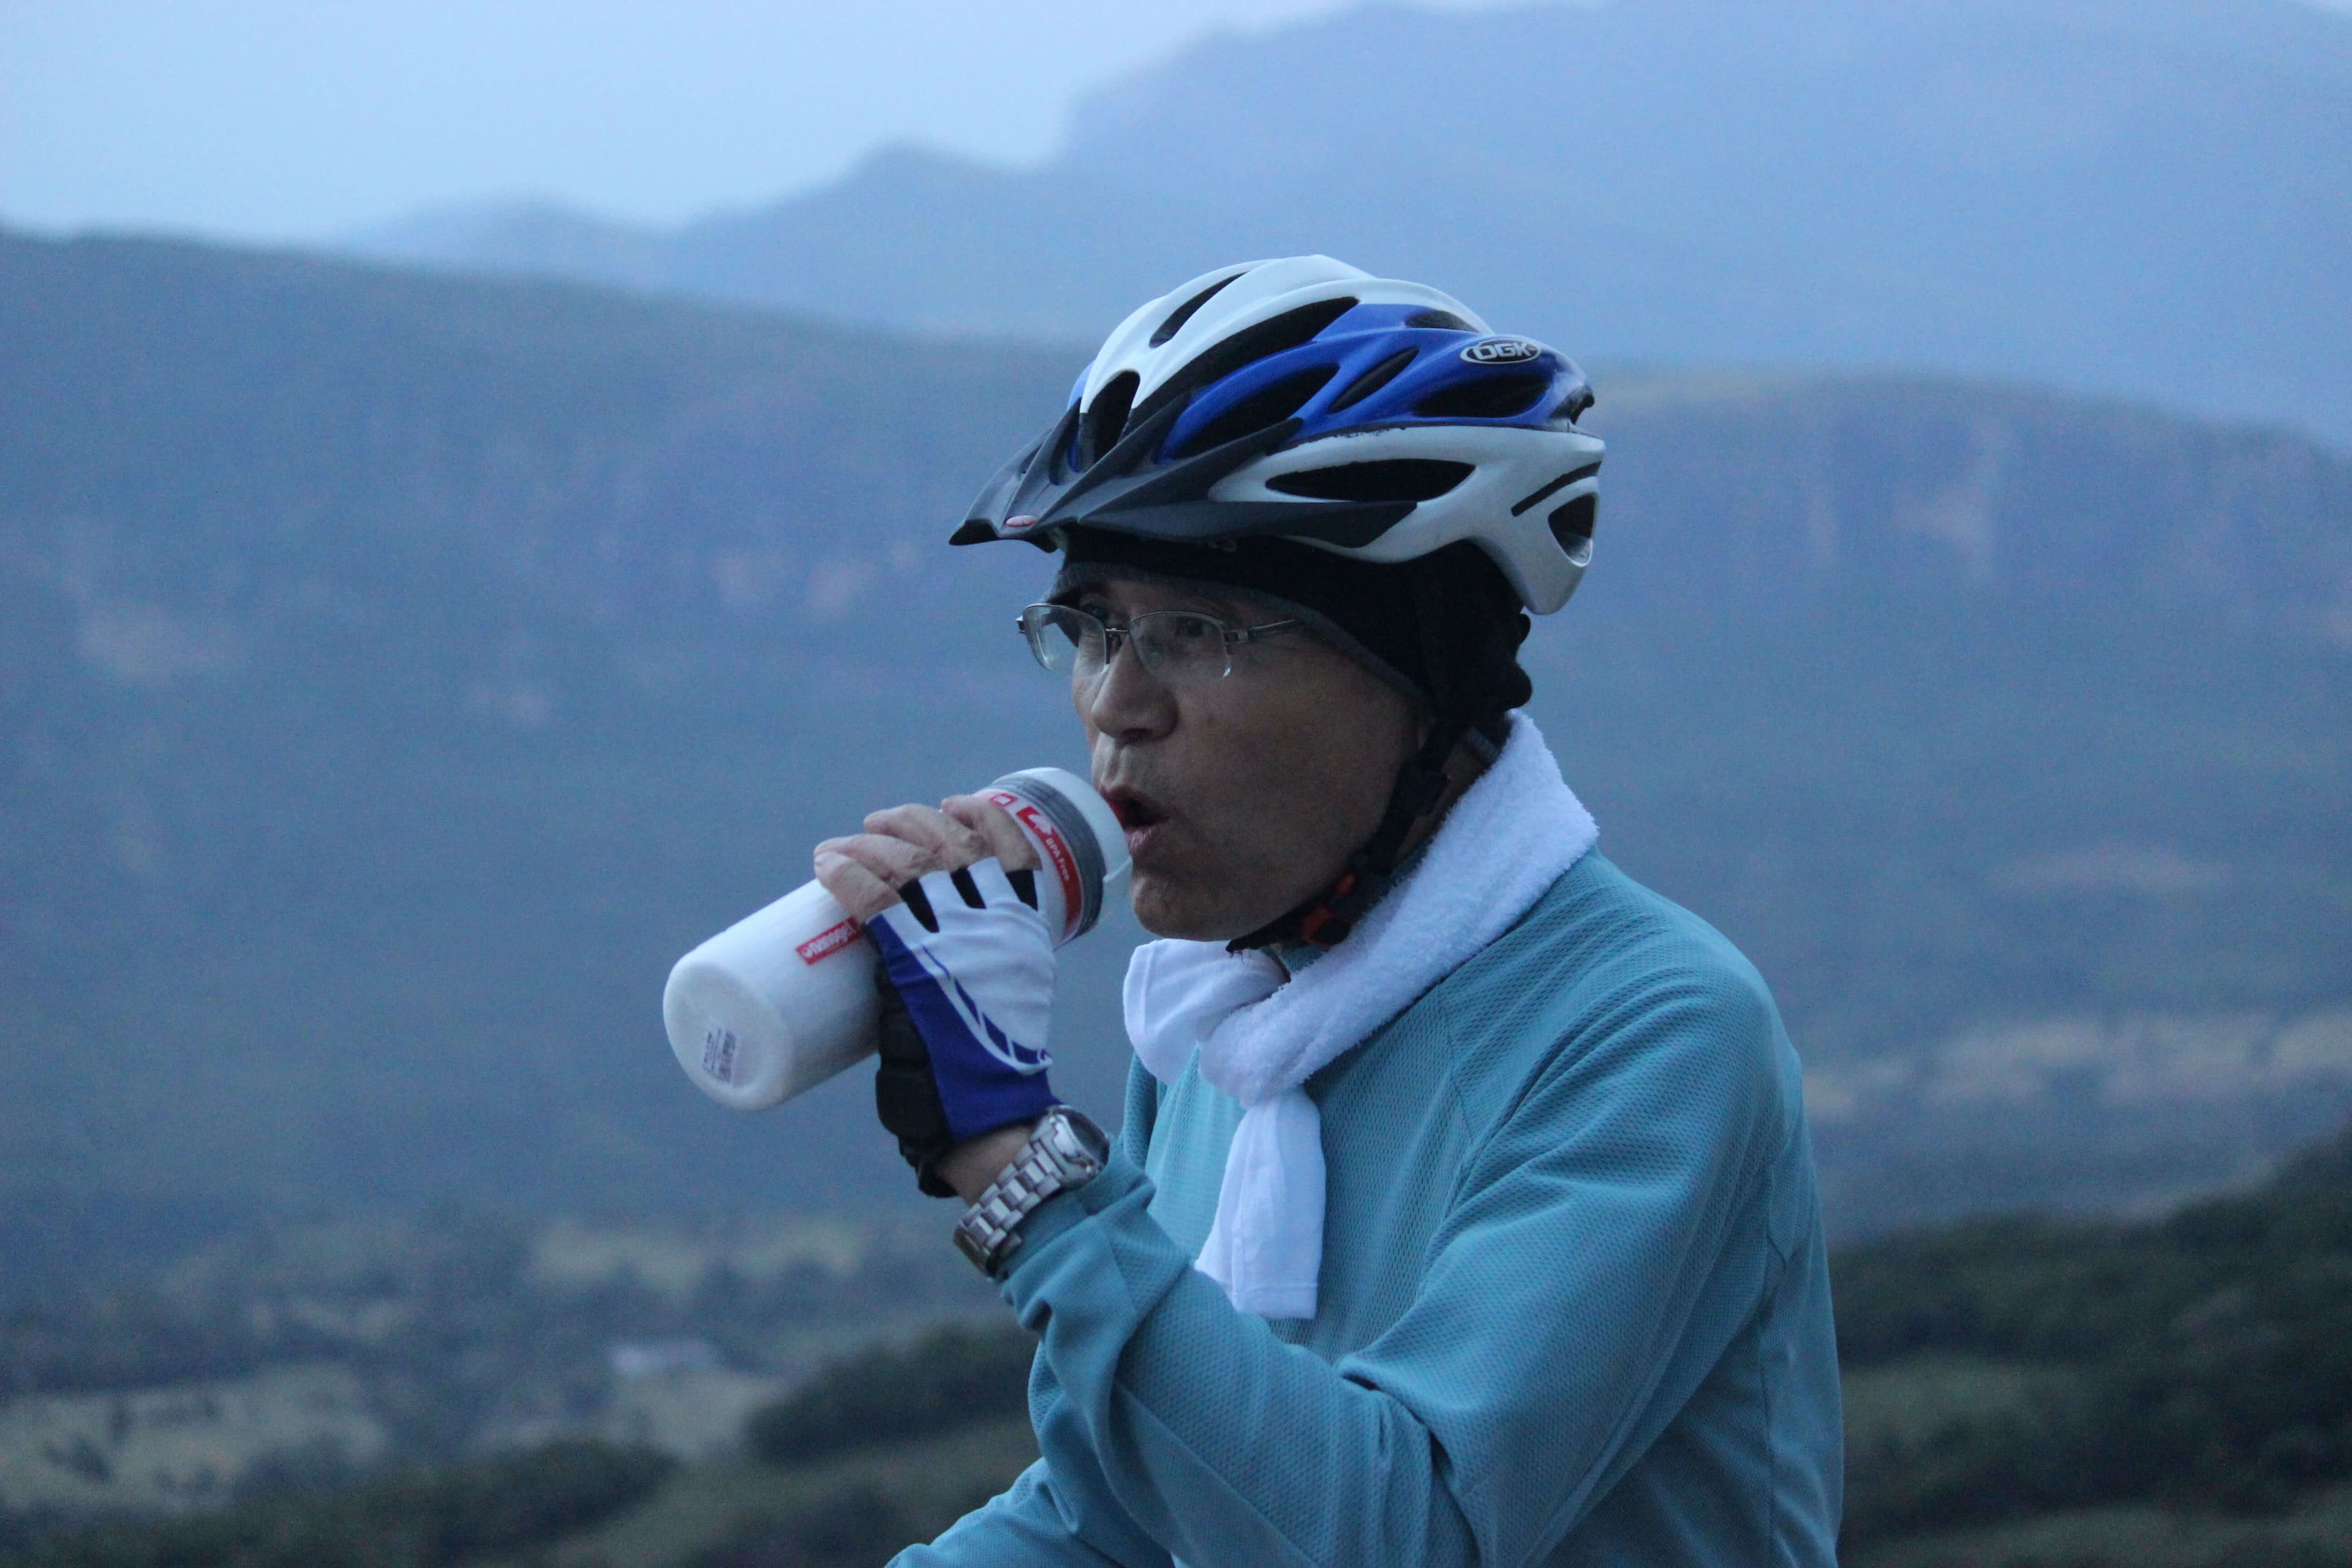 骑自行车的人在前往 Meemure 斯里兰卡的自行车之旅中得到一些茶点